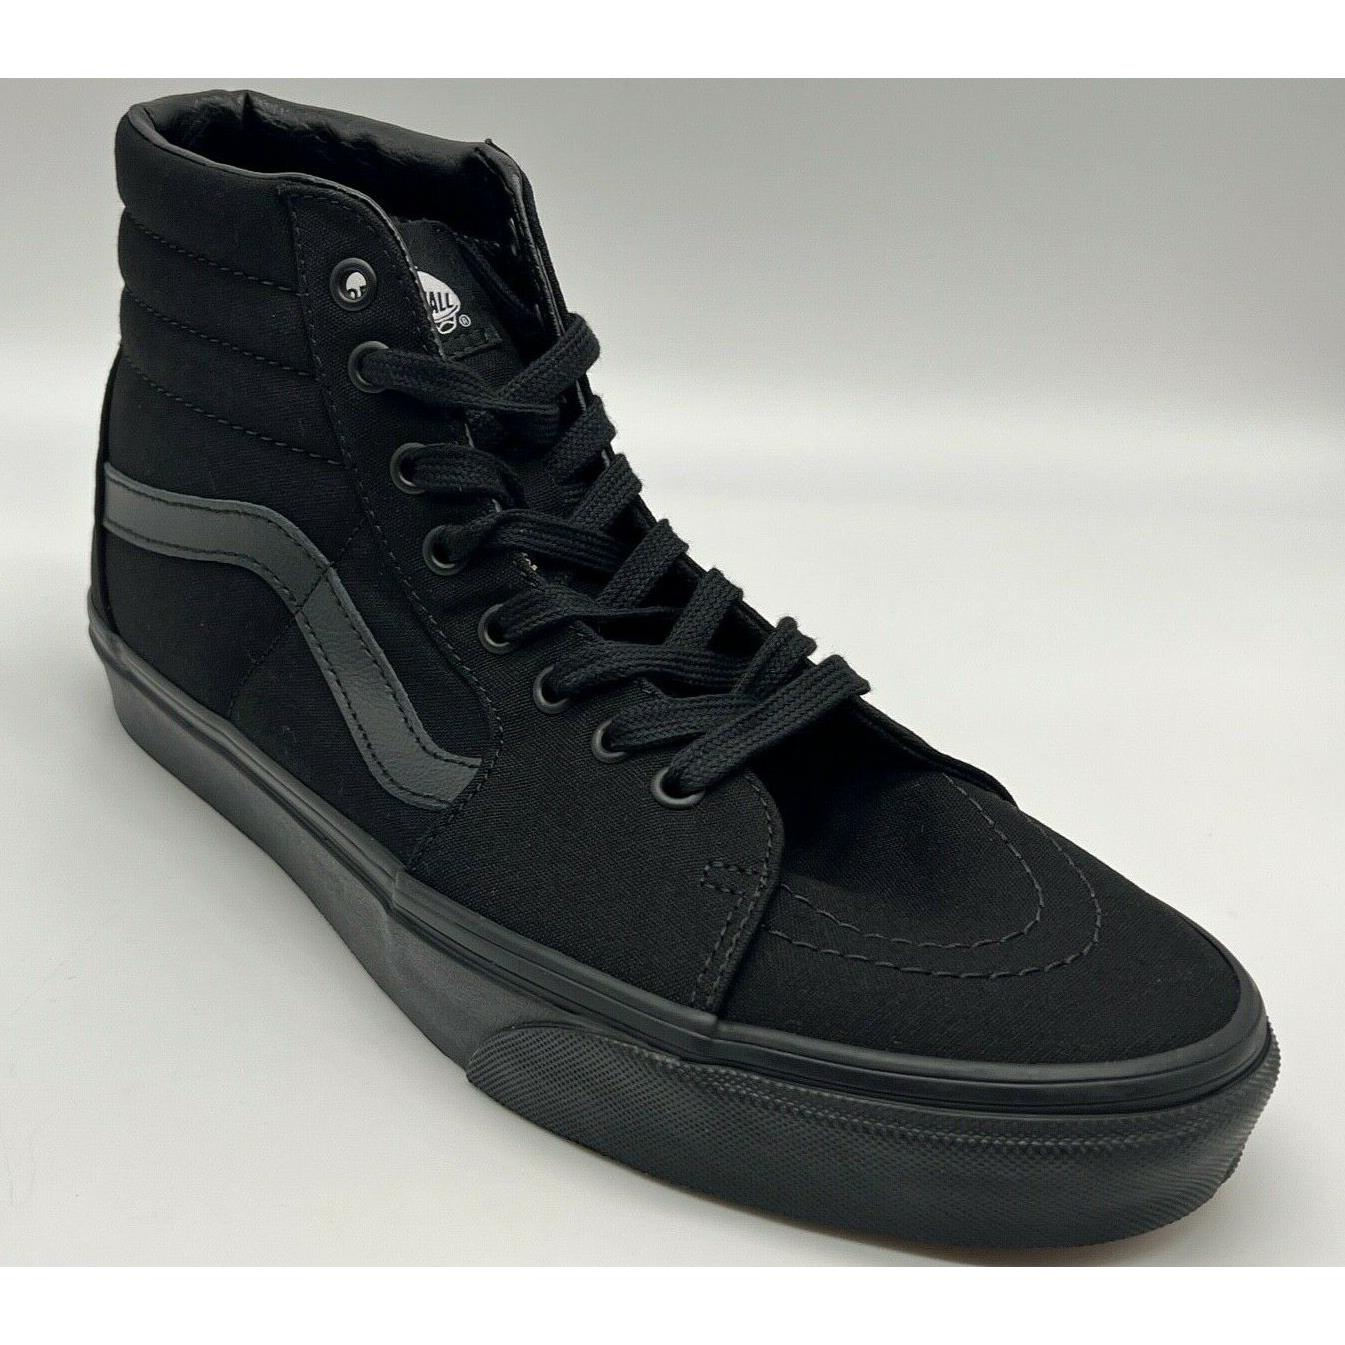 Vans SK8 HI Skateboard Canvas Athletic Shoes Black Black Black For Men SZ 13